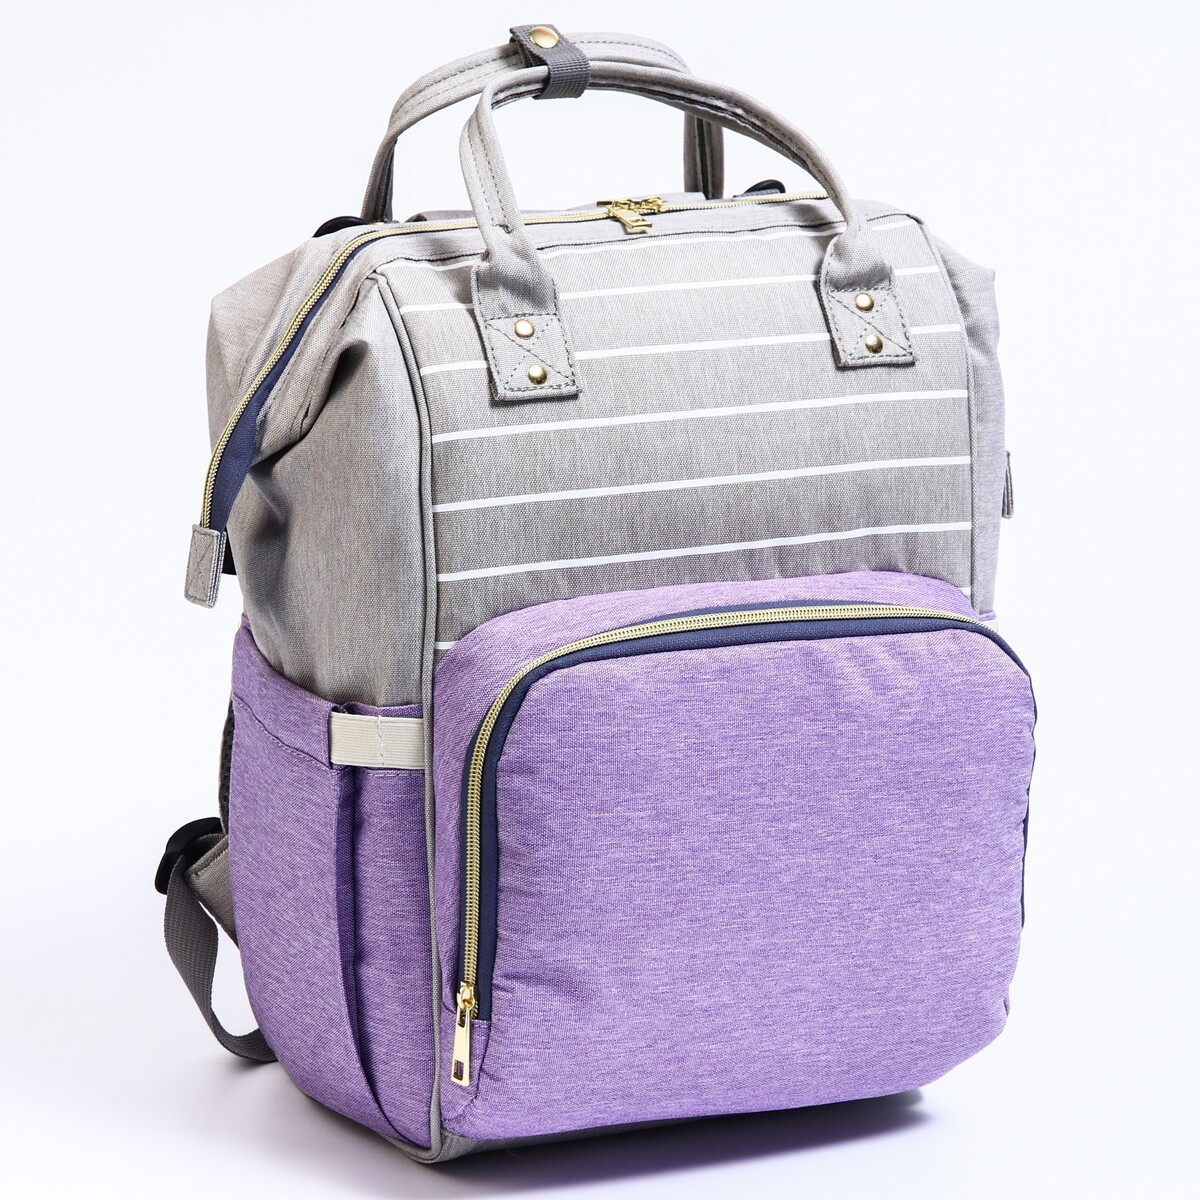 Рюкзак женский с термокарманом, термосумка - портфель, цвет серый/фиолетовый рюкзак kingkong i 30 wb 9064 черн средний фоторюкзак